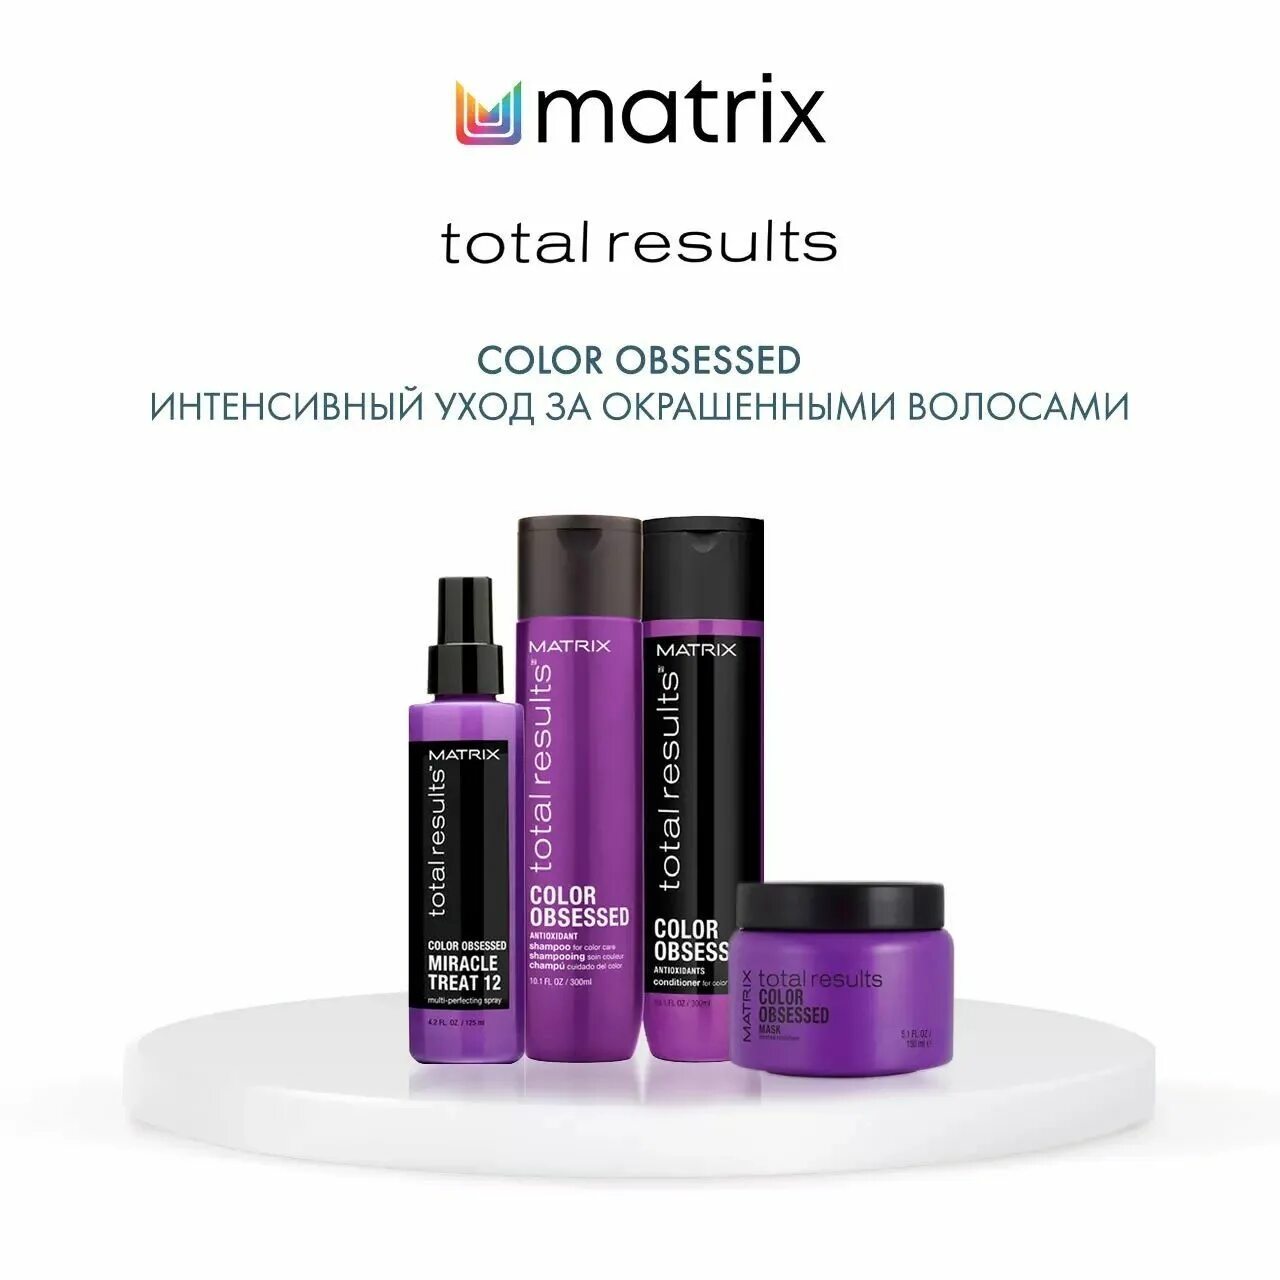 Results color. Матрикс колор Обсэссд. Шампунь Матрикс Color obsessed. Matrix total Results Color obsessed шампунь для окрашенных волос с антиоксидантами. Total Results Color obsessed кондиционер для окрашенных волос 1000мл.